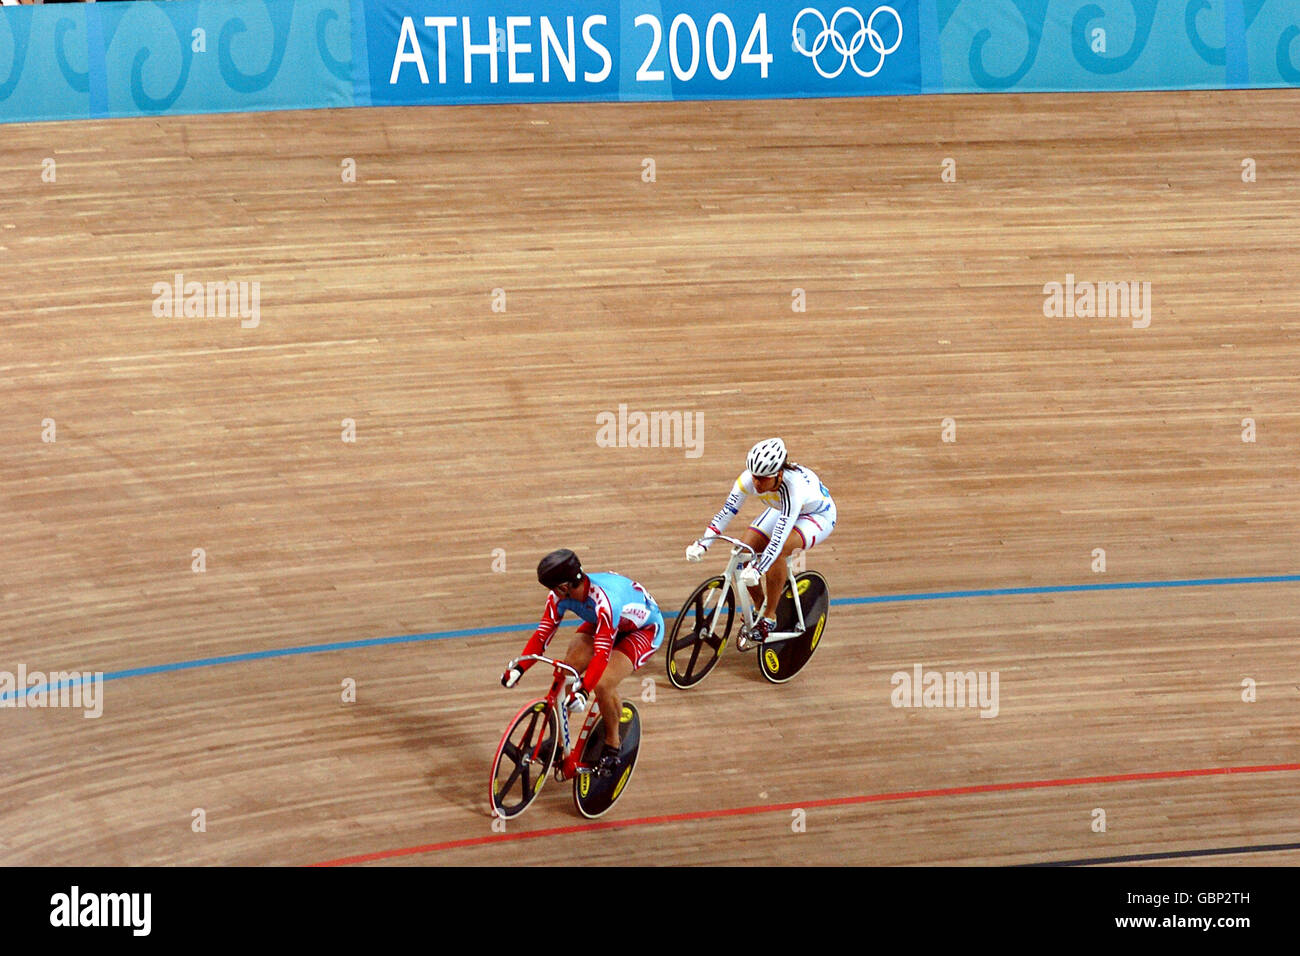 Ciclismo - Giochi Olimpici di Atene 2004 - Sprint femminile - Quaterfinal. Il canadese Lori-Ann Muenzer (l) guarda indietro per controllare la distanza del suo oppenente veneziana Daniela Greluis Larreal Chrinos (r) Foto Stock